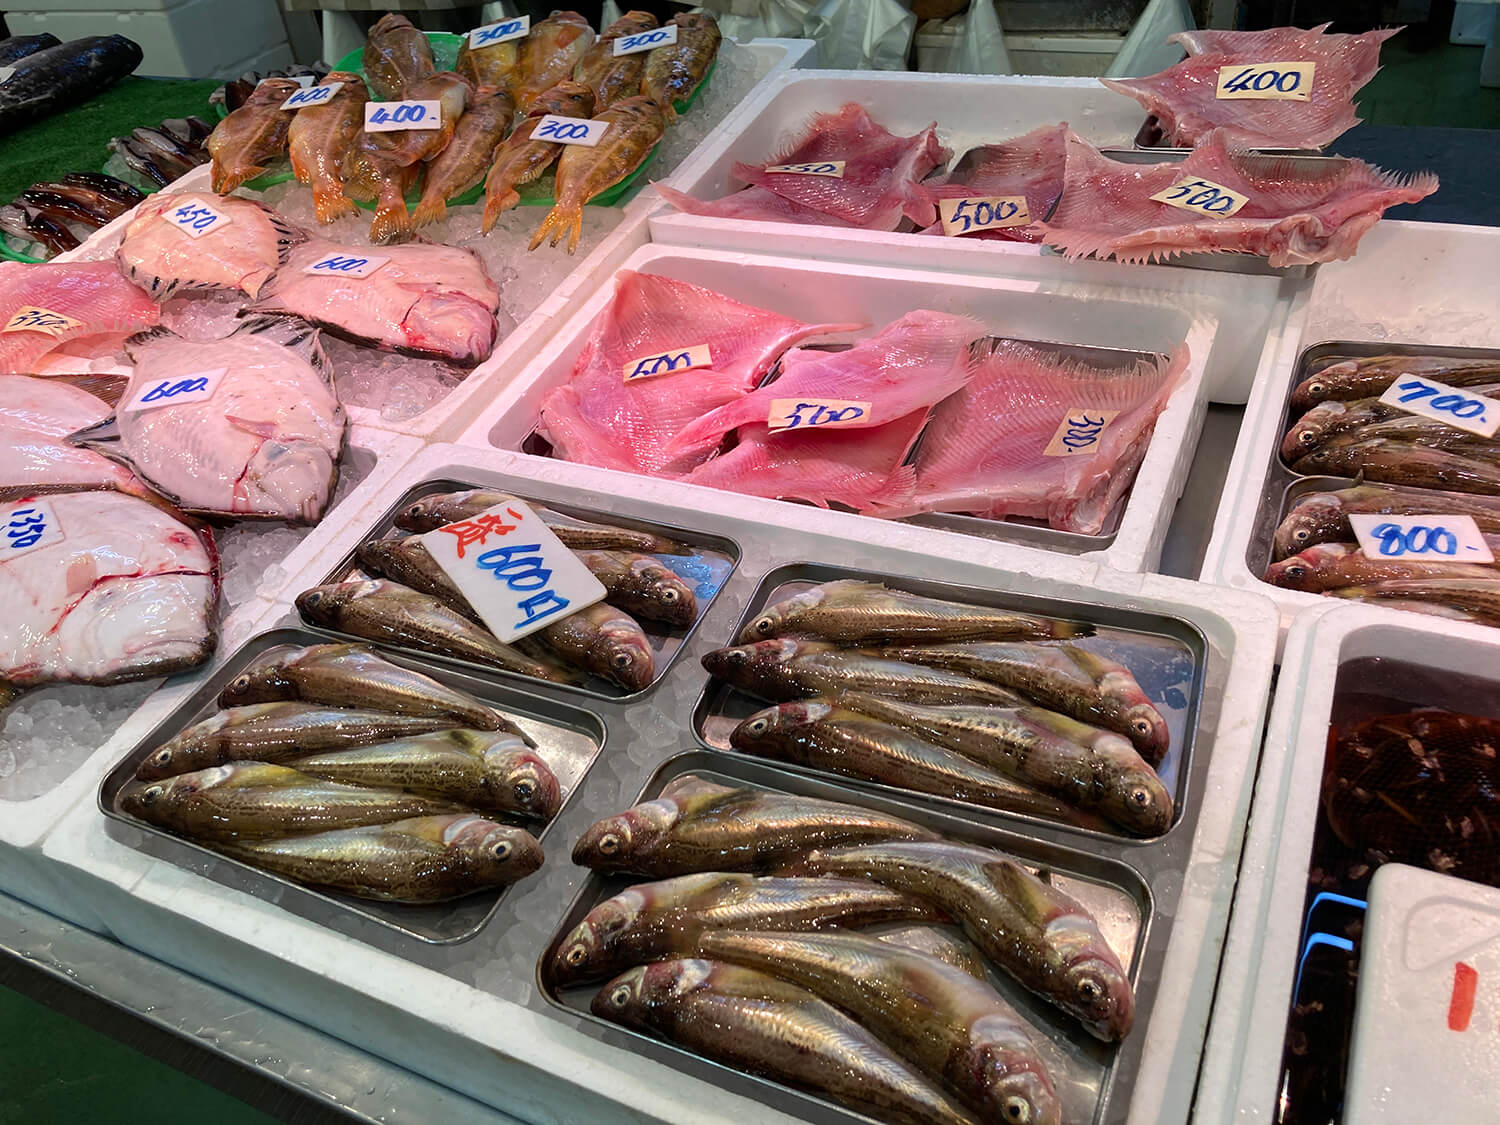 ハタハタ、カスベ、ヤナギノマイなど地元でおなじみの魚が並ぶ